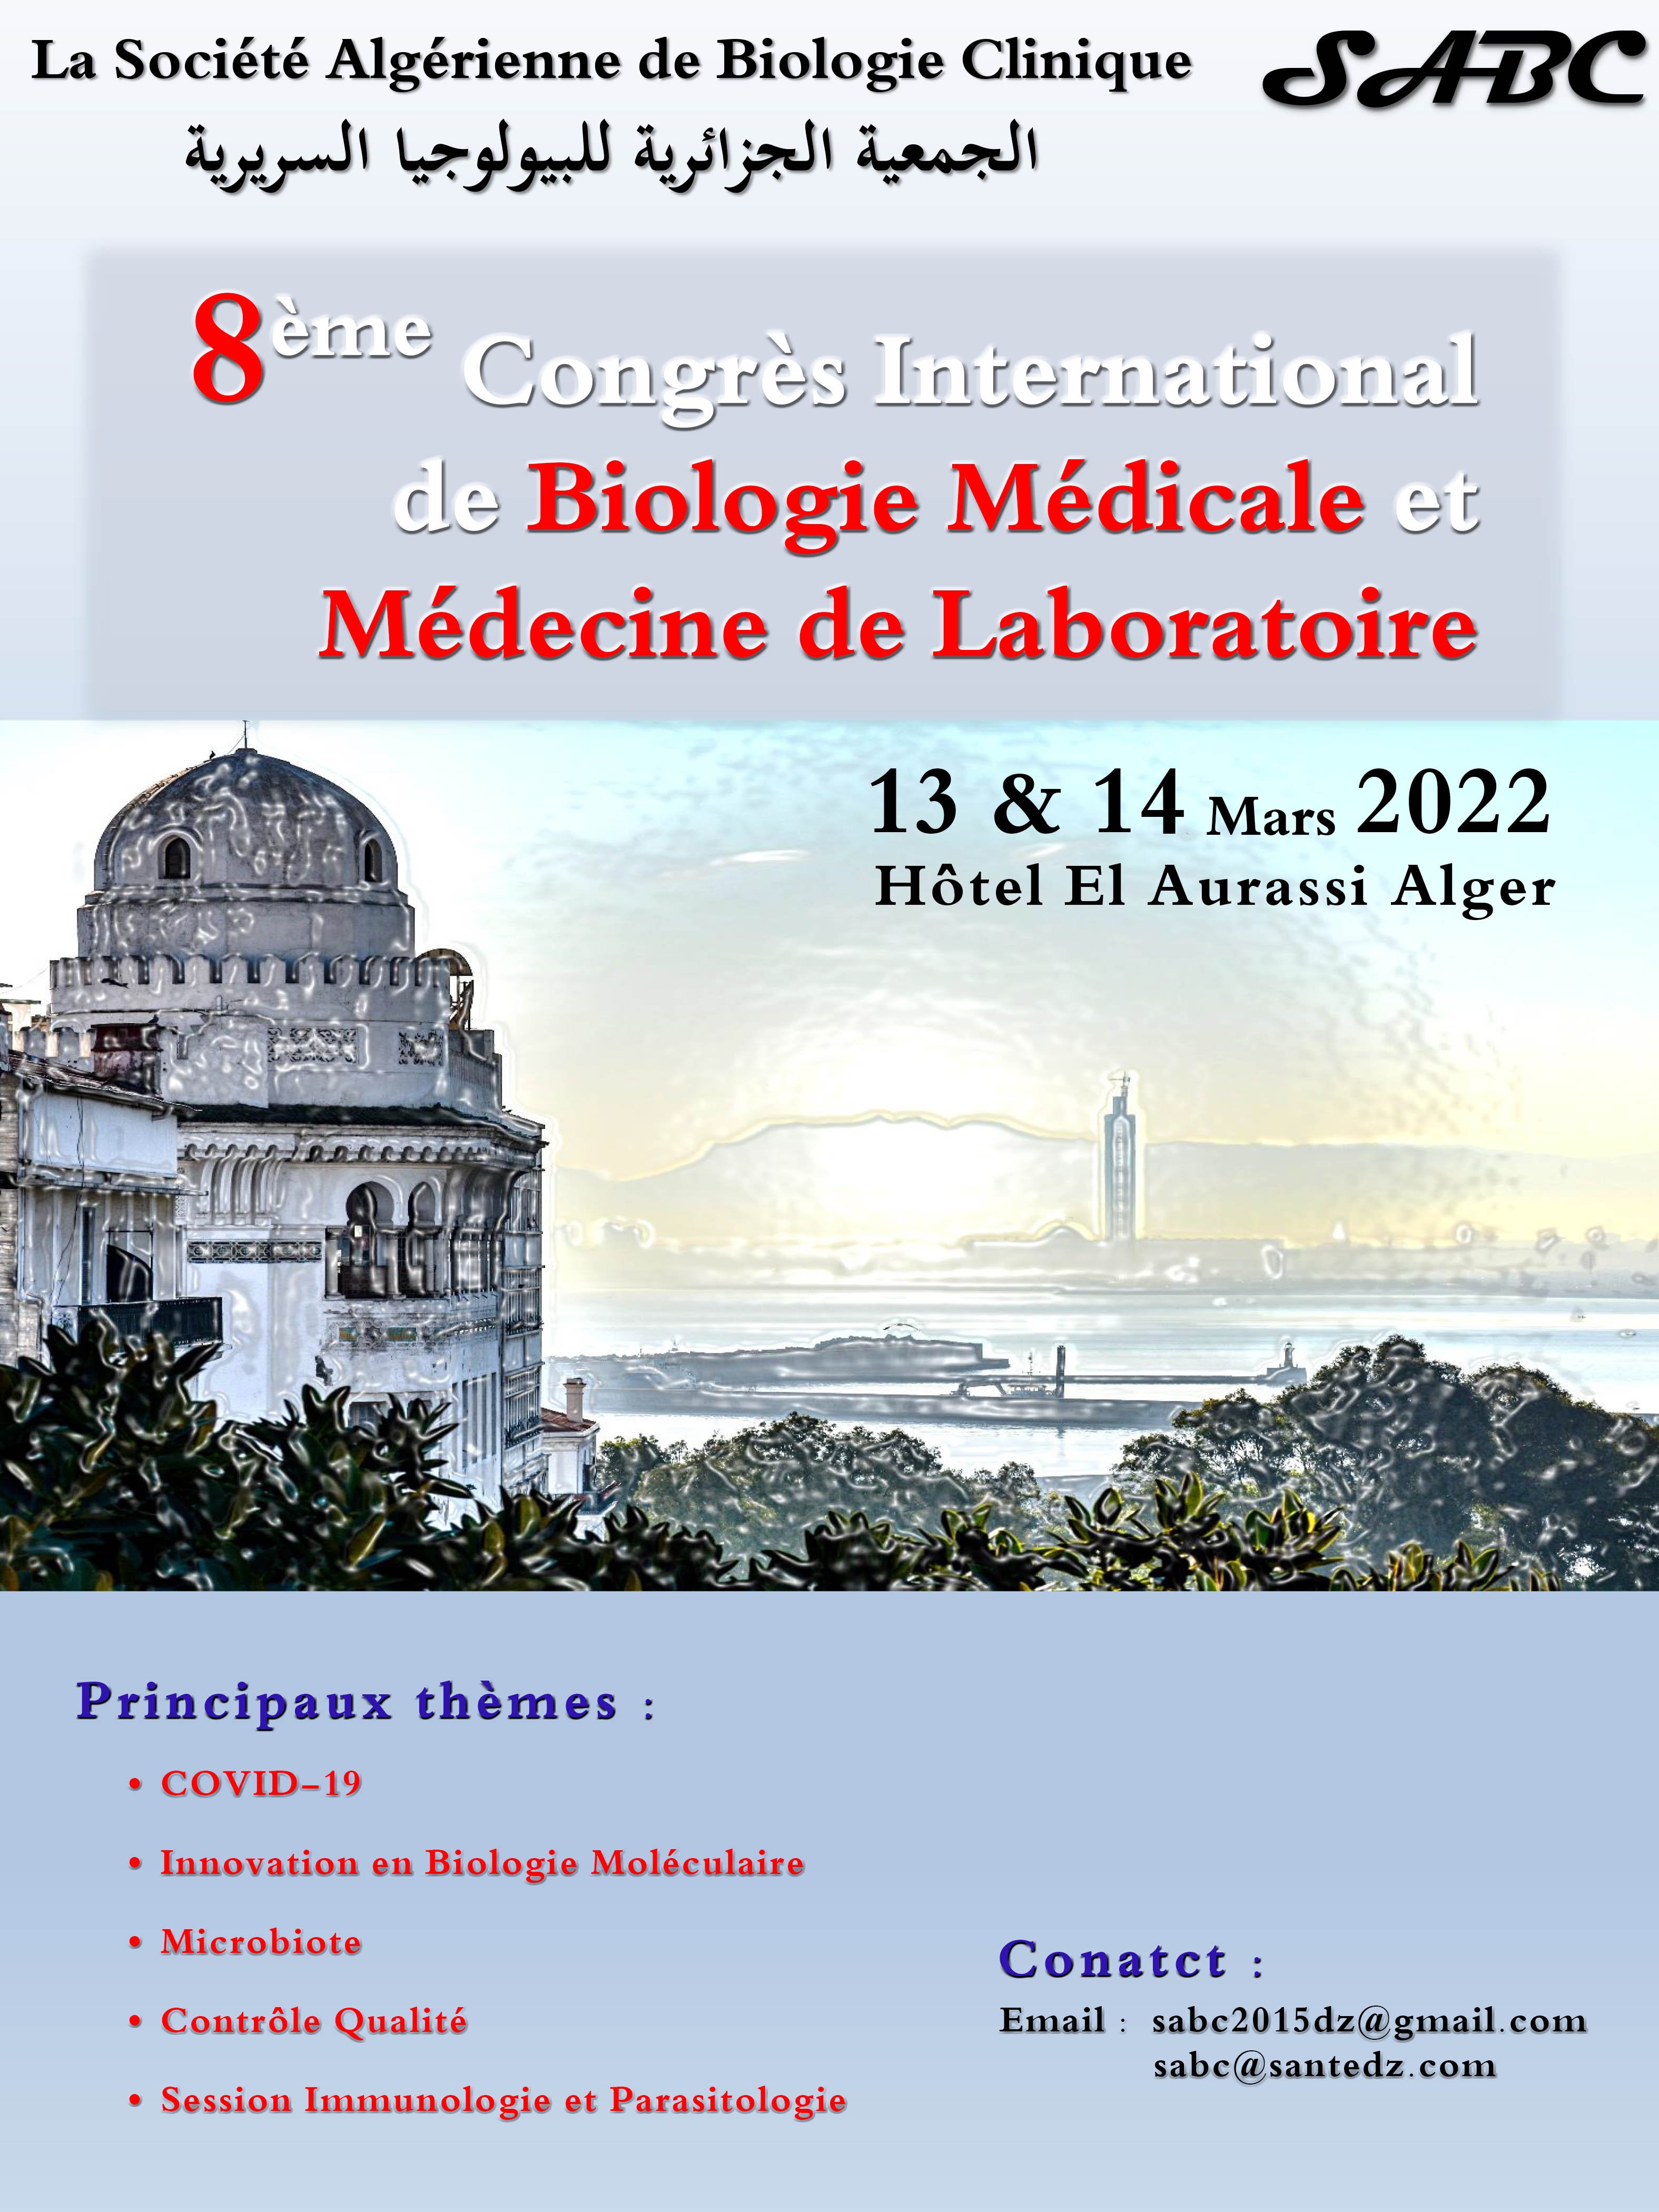 8ème Congrès International de Biologie Médicale et Médecine de Laboratoire.